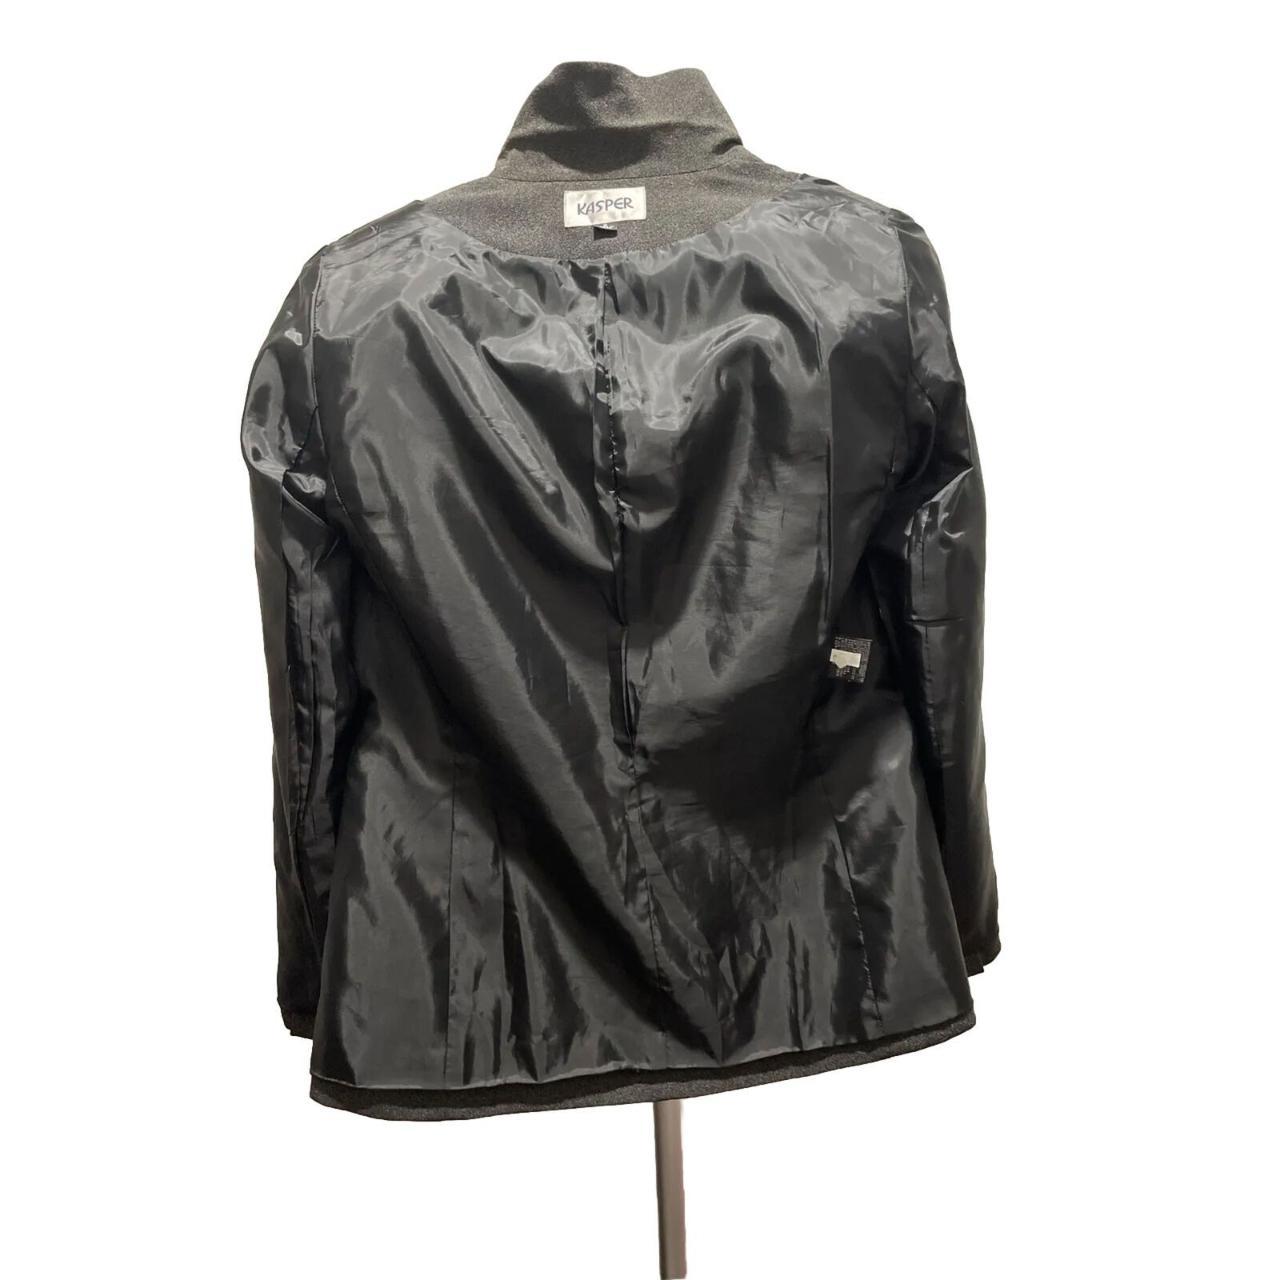 Kasper Blazer Suit Jacket Women Sz 8 Grey Notch - Depop